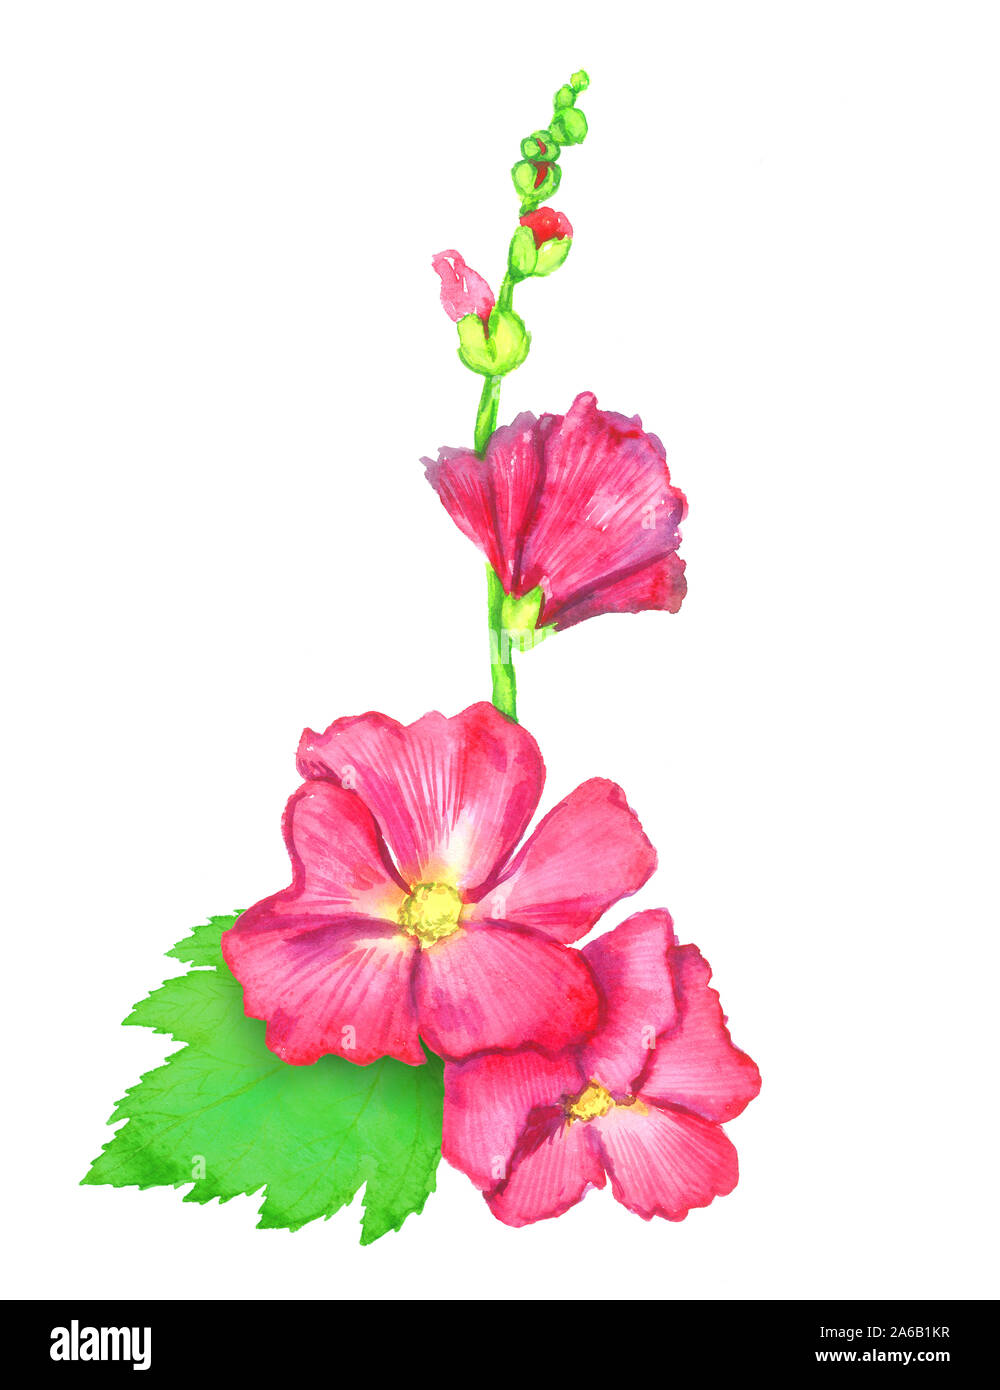 Red Alcea rosea (comune hollyhock, malva fiore) stelo con il verde delle foglie e germogli, isolato dipinto a mano acquerello illustrazione elemento di design Foto Stock